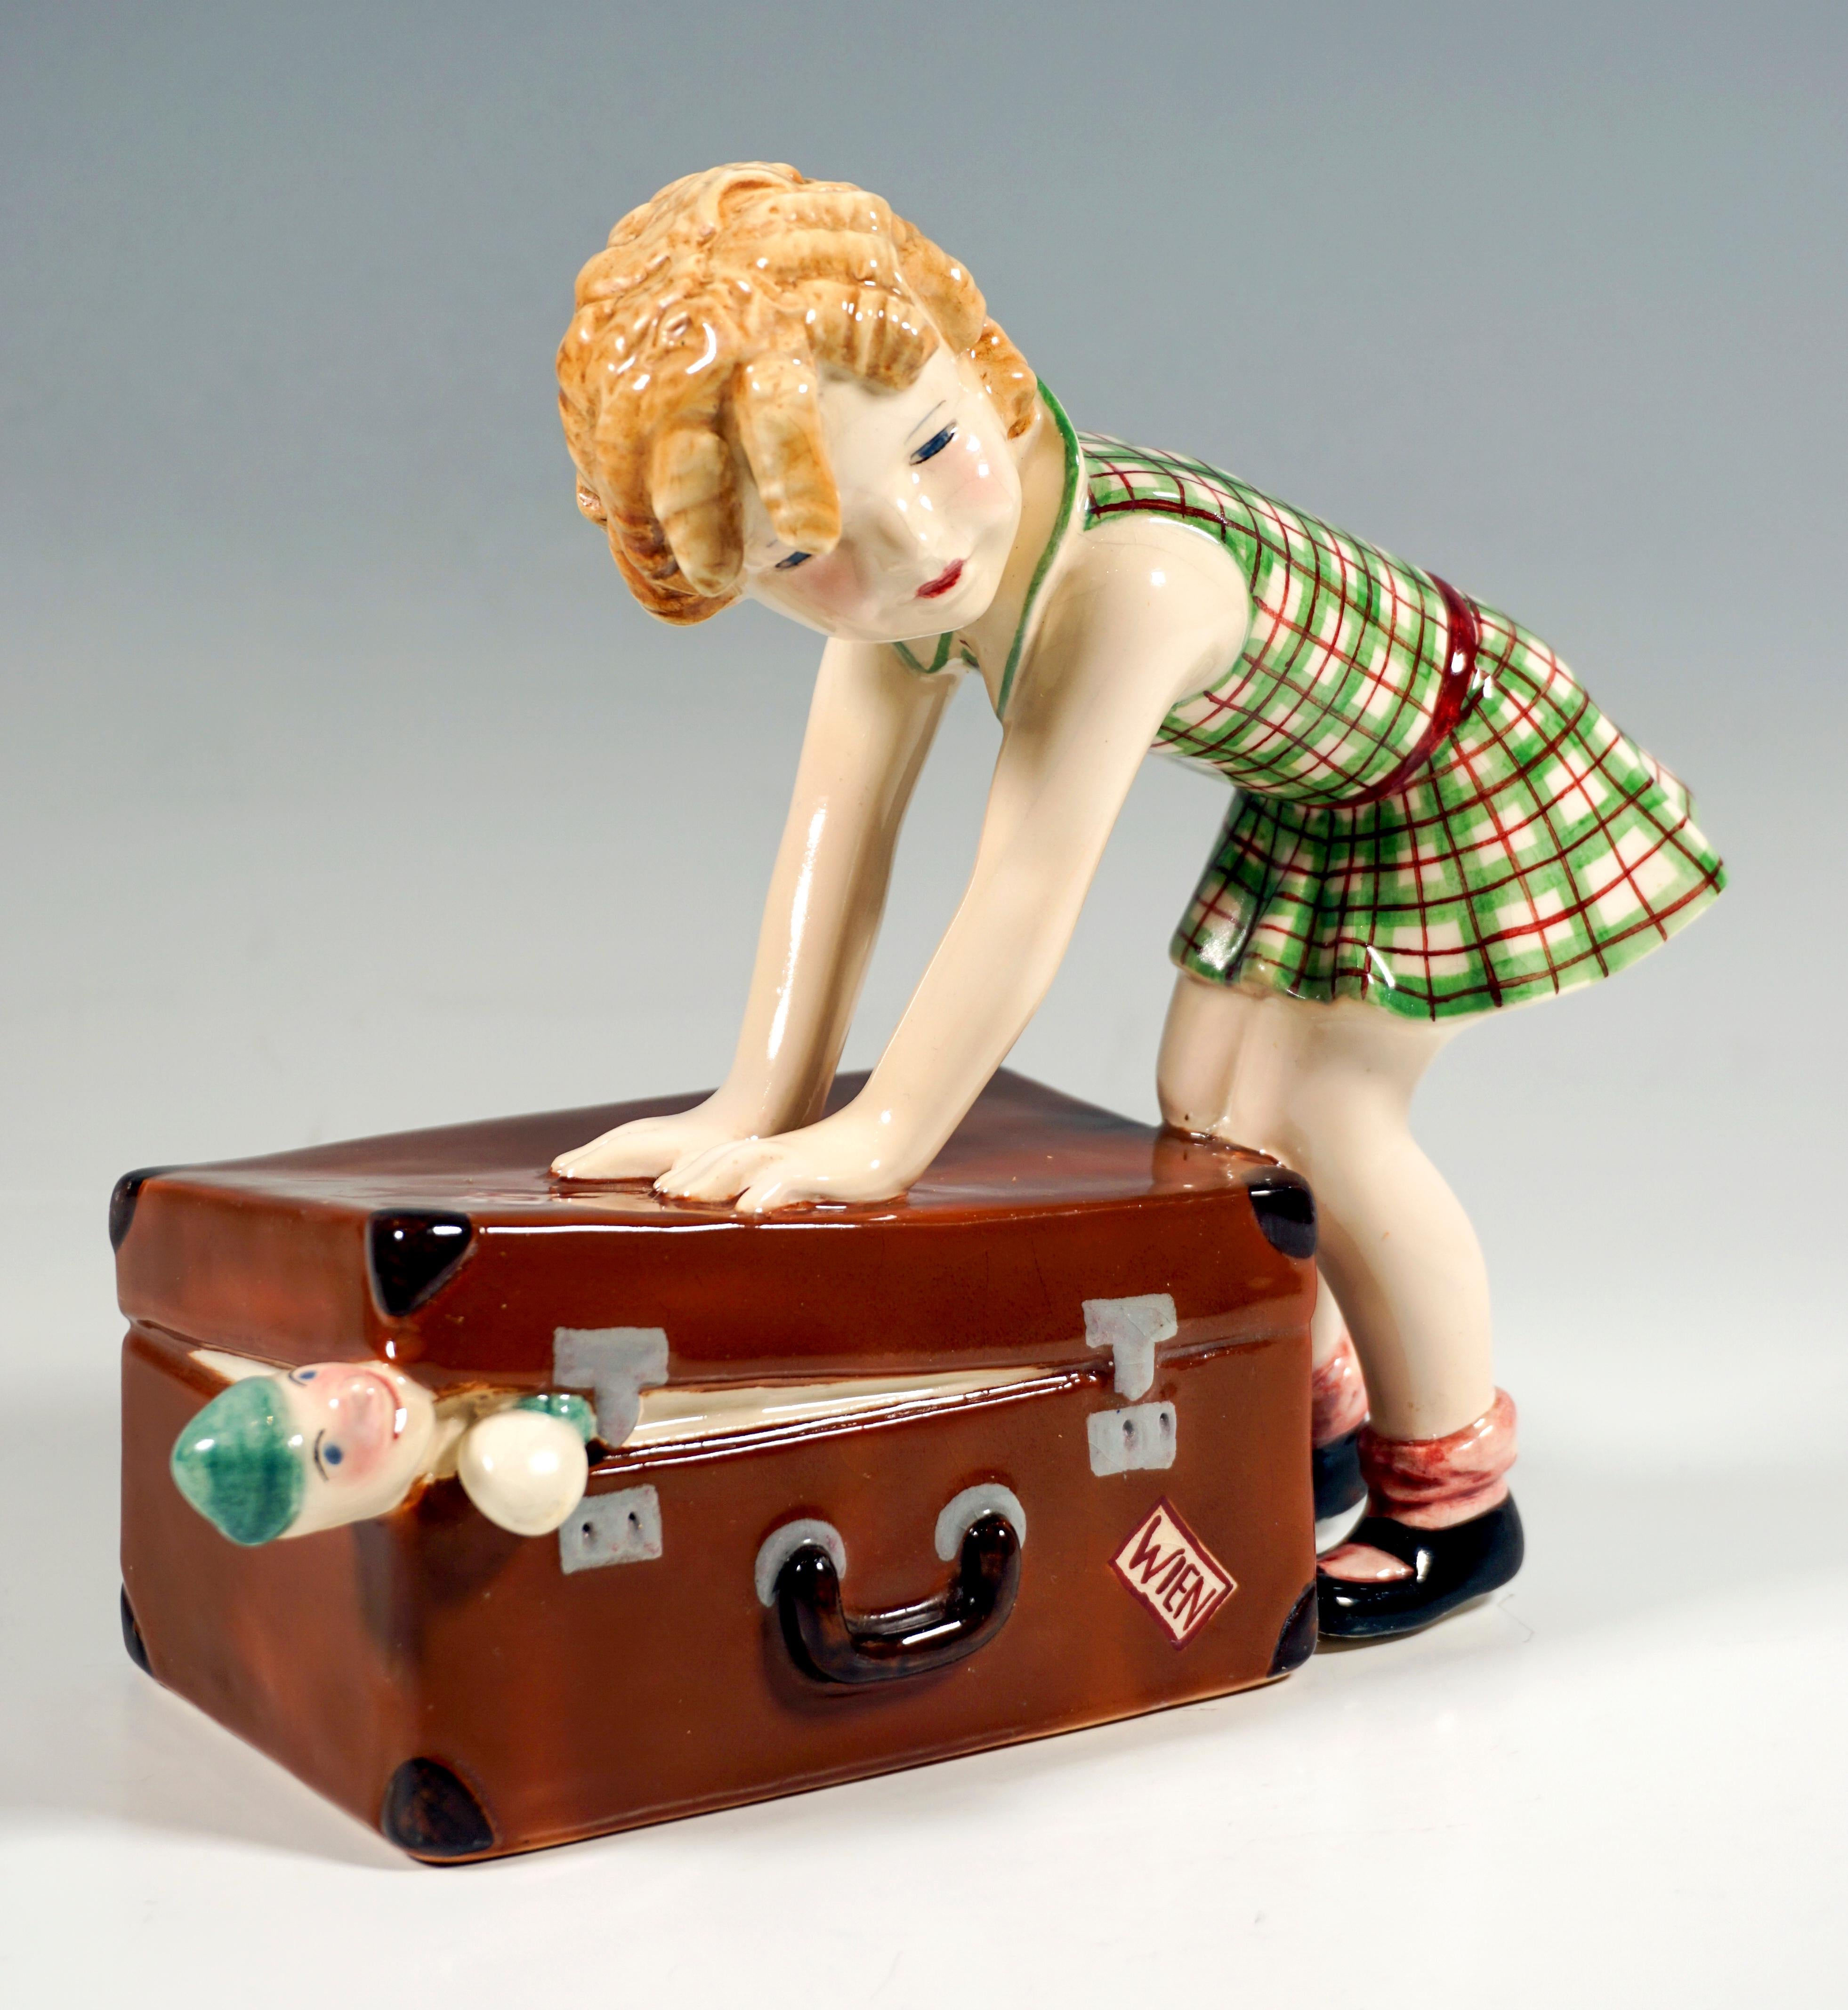 Austrian Goldscheider Vienna Child Figurine, Little Girl with Suitcase, by Dakon, C. 1937 For Sale